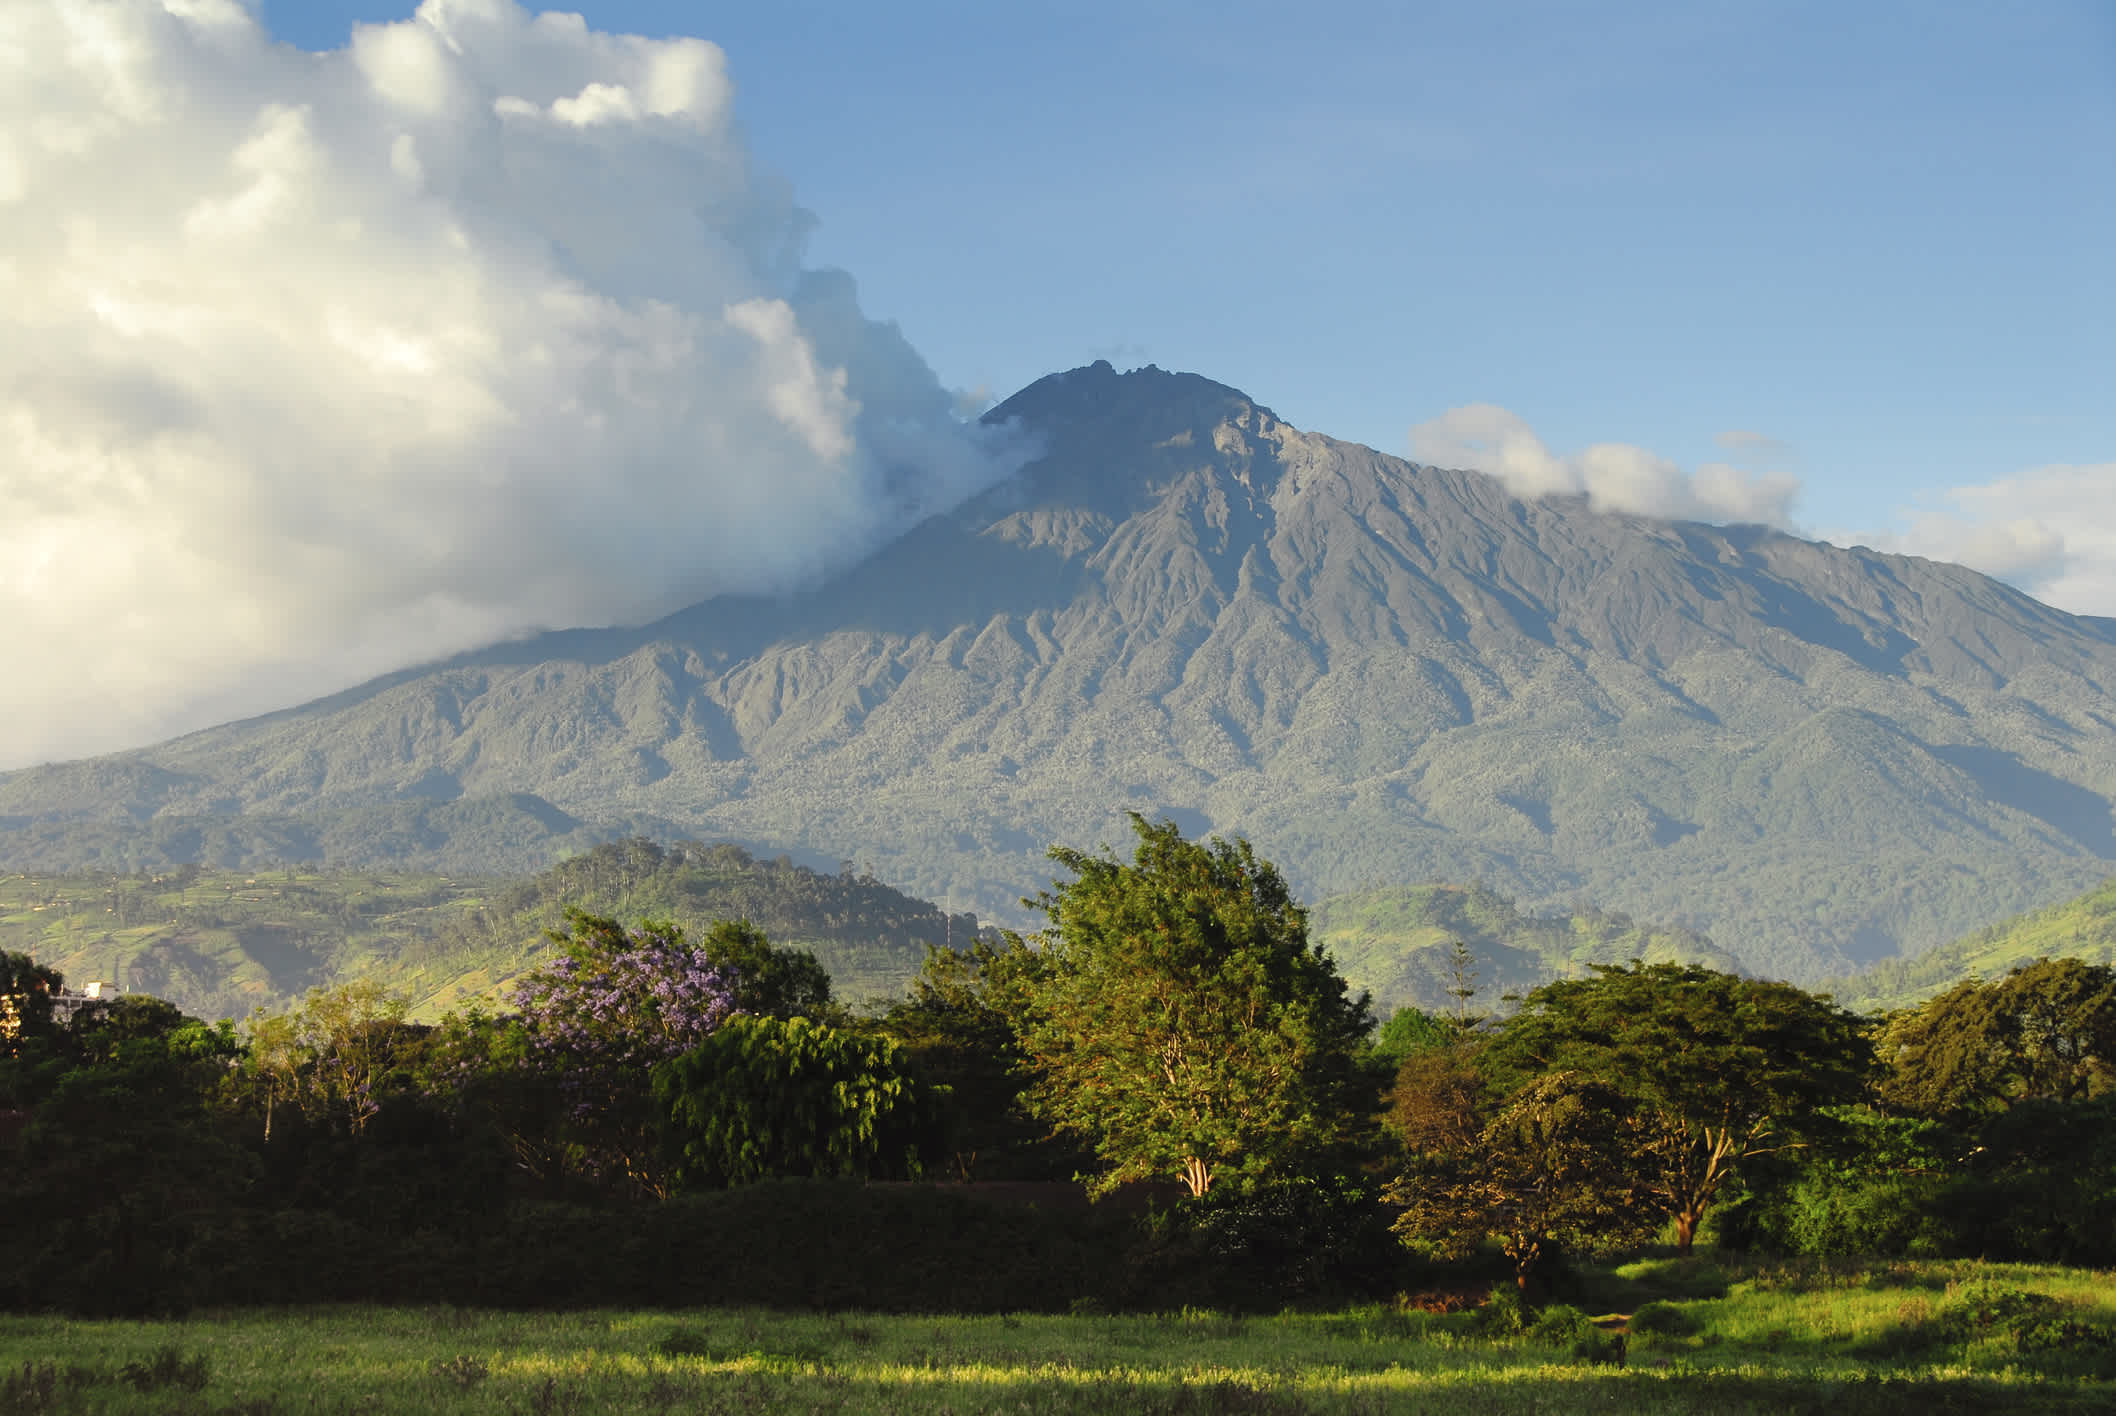 Découvrez le parc national d'Arusha pendant votre voyage en Tanzanie et le Mont Meru.